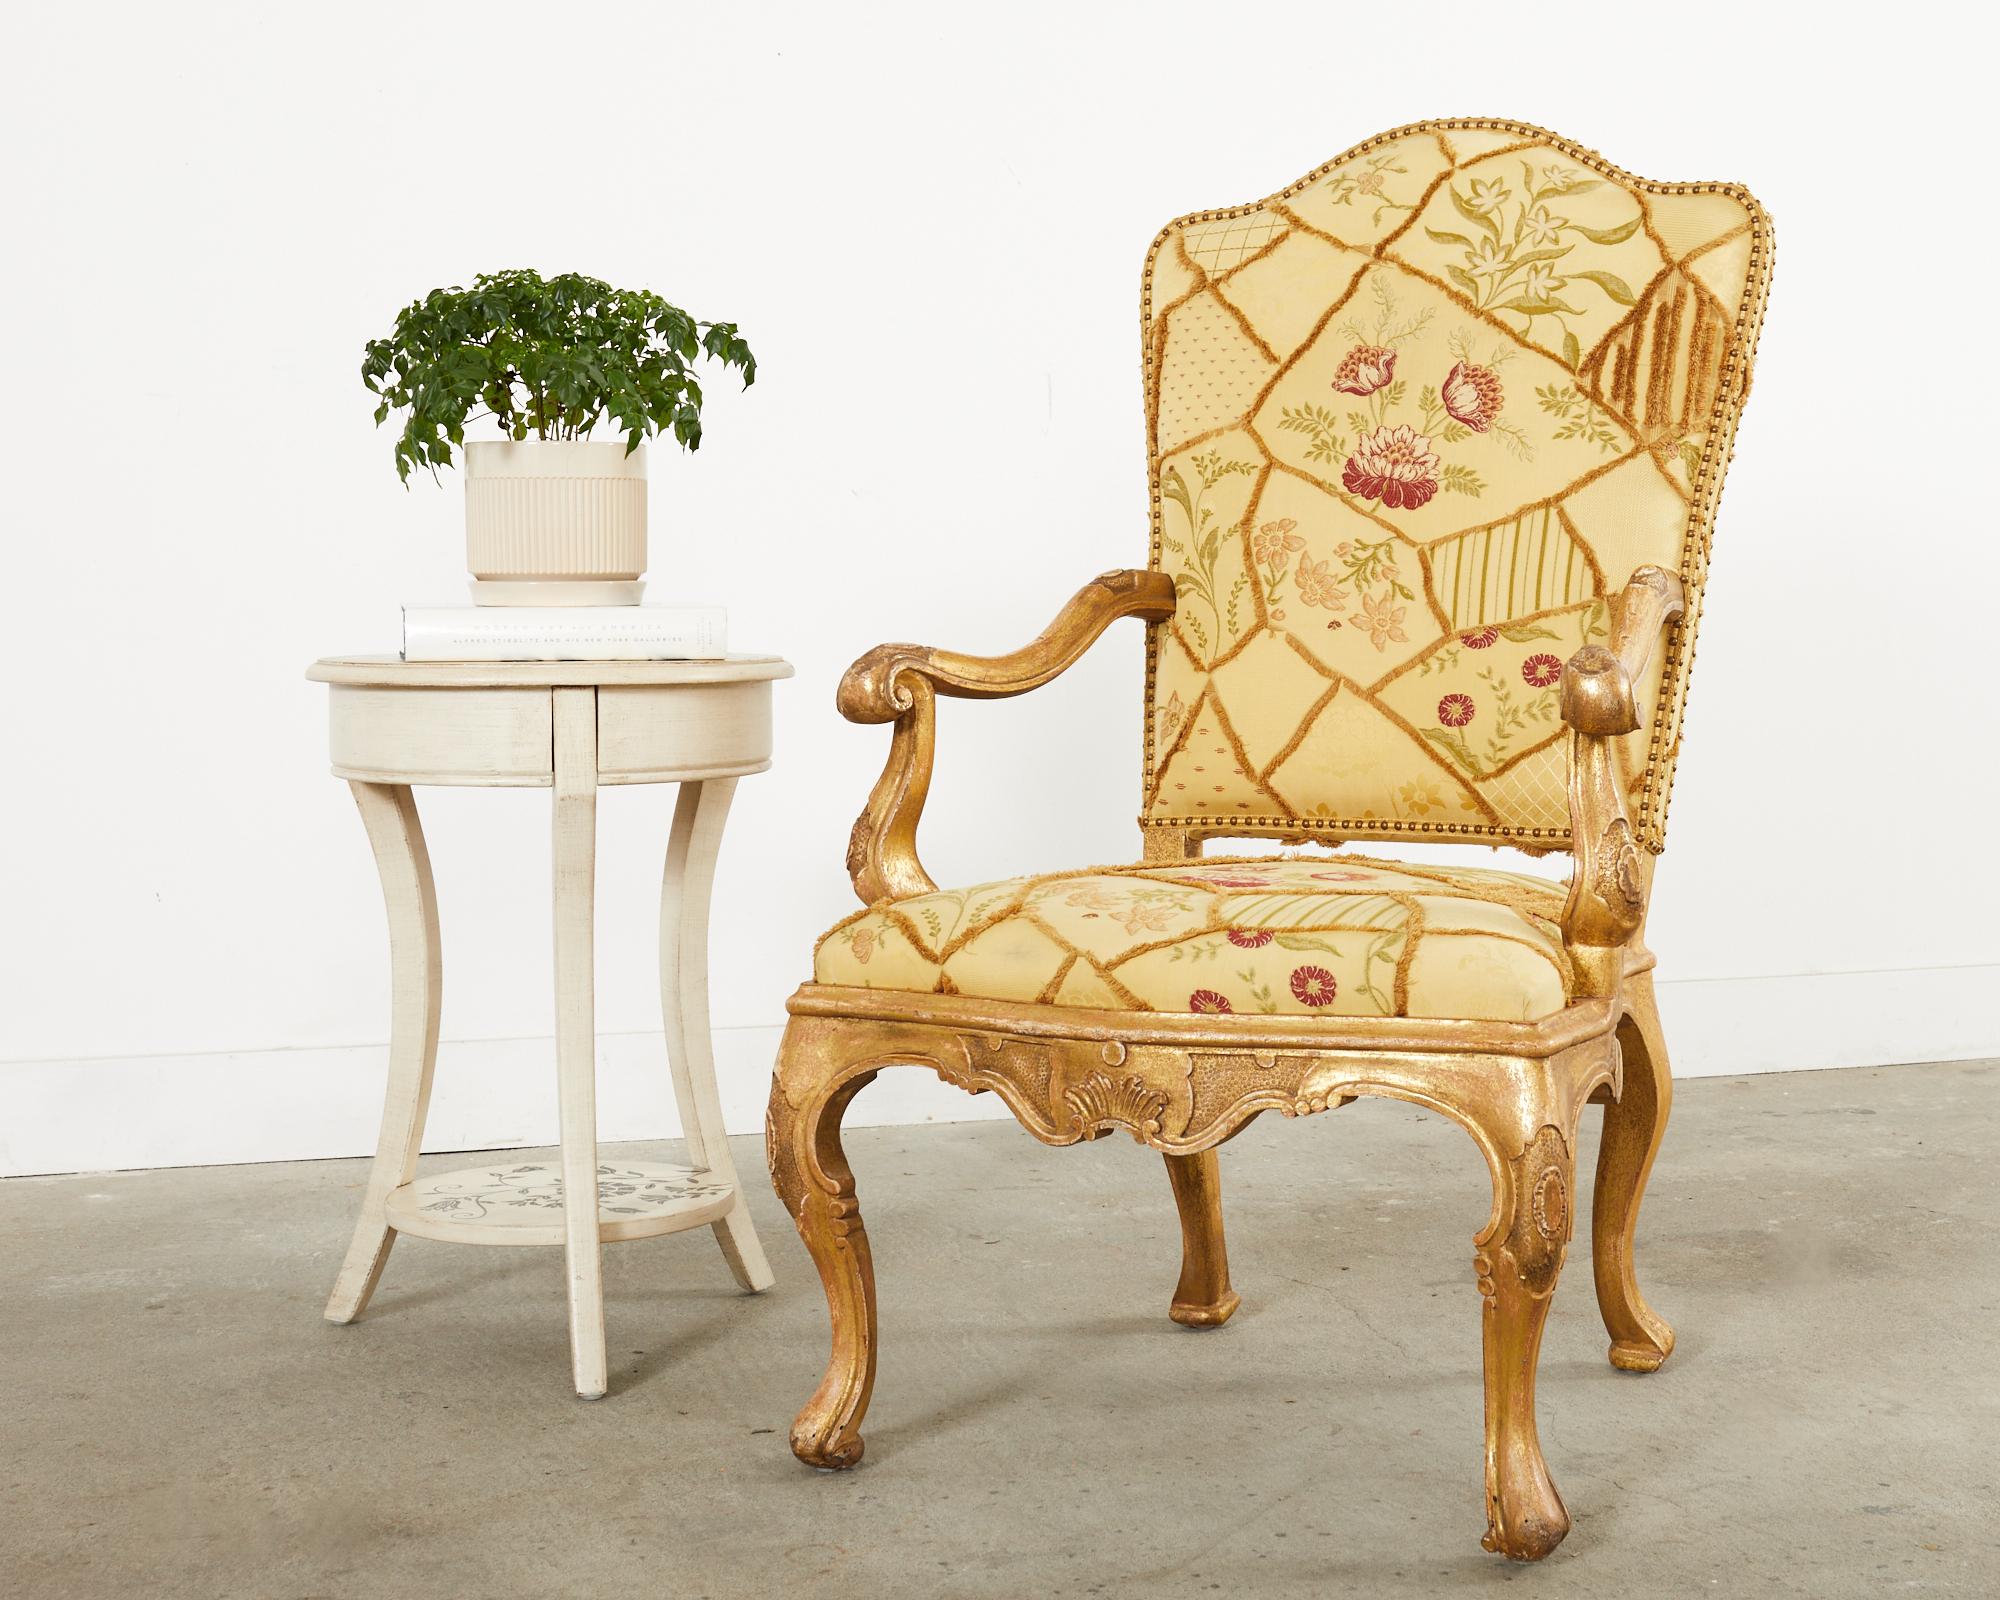 Opulenter Thronsessel oder Sessel im italienischen Barockstil von Hendrix Allardyce Hollywood, CA. Der Sessel besteht aus einem großen, handgeschnitzten Buchengestell, das mit einer dramatischen Vergoldung verziert ist. Das Holz hat eine absichtlich